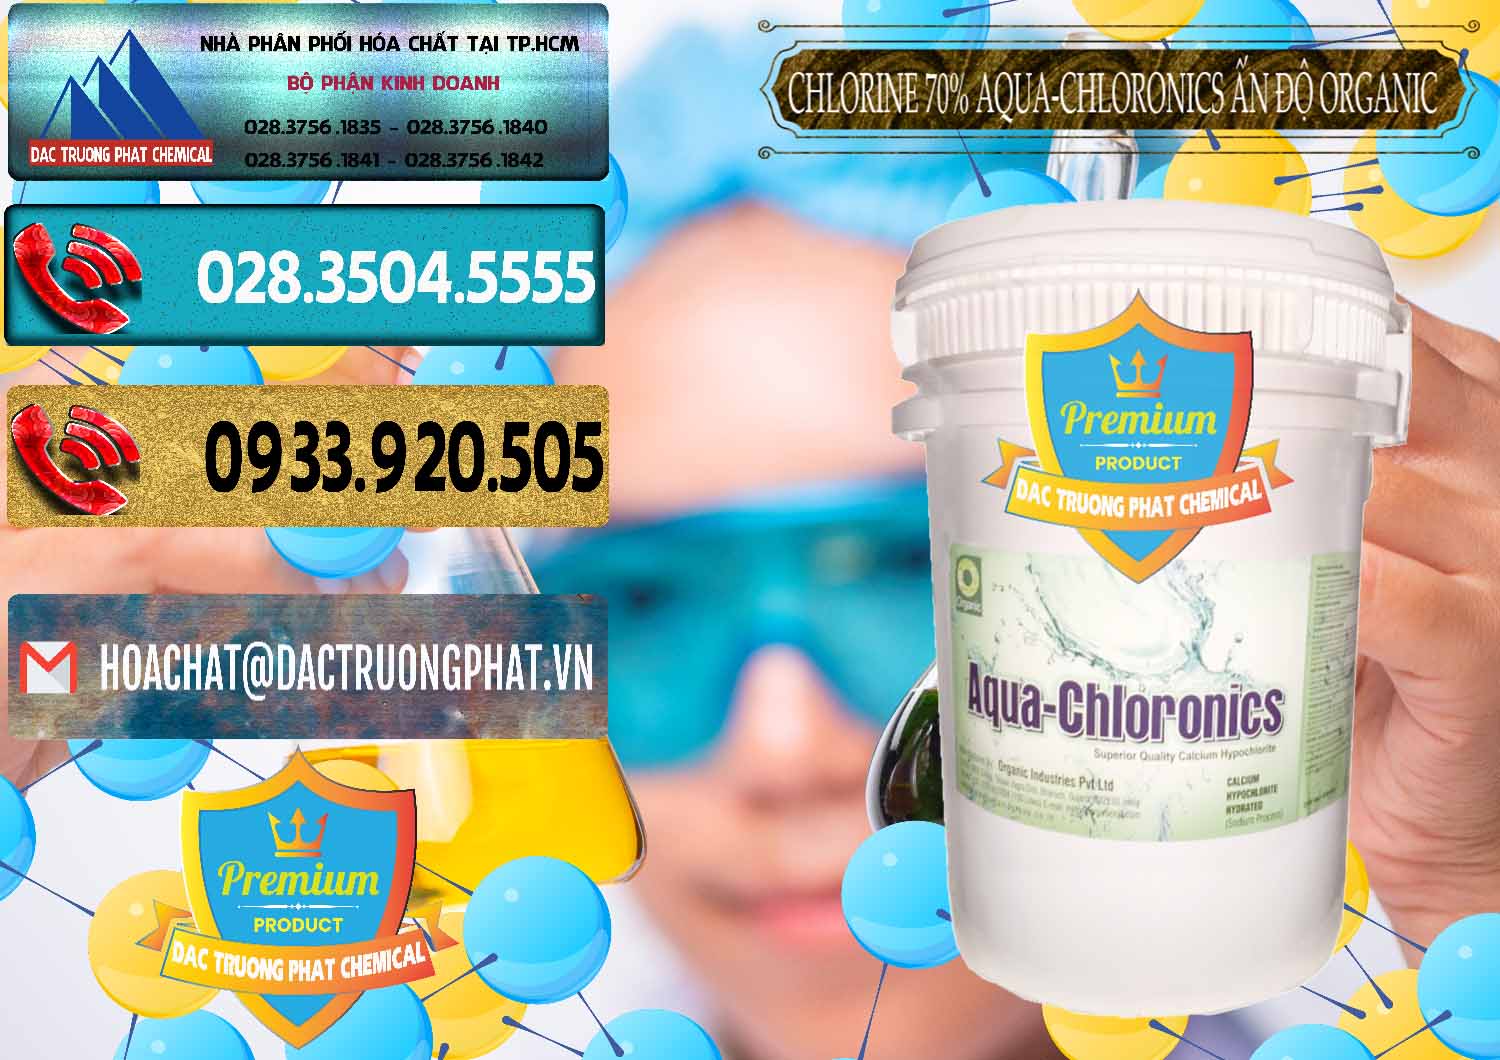 Nơi chuyên phân phối ( bán ) Chlorine – Clorin 70% Aqua-Chloronics Ấn Độ Organic India - 0211 - Đơn vị nhập khẩu & phân phối hóa chất tại TP.HCM - hoachatdetnhuom.com